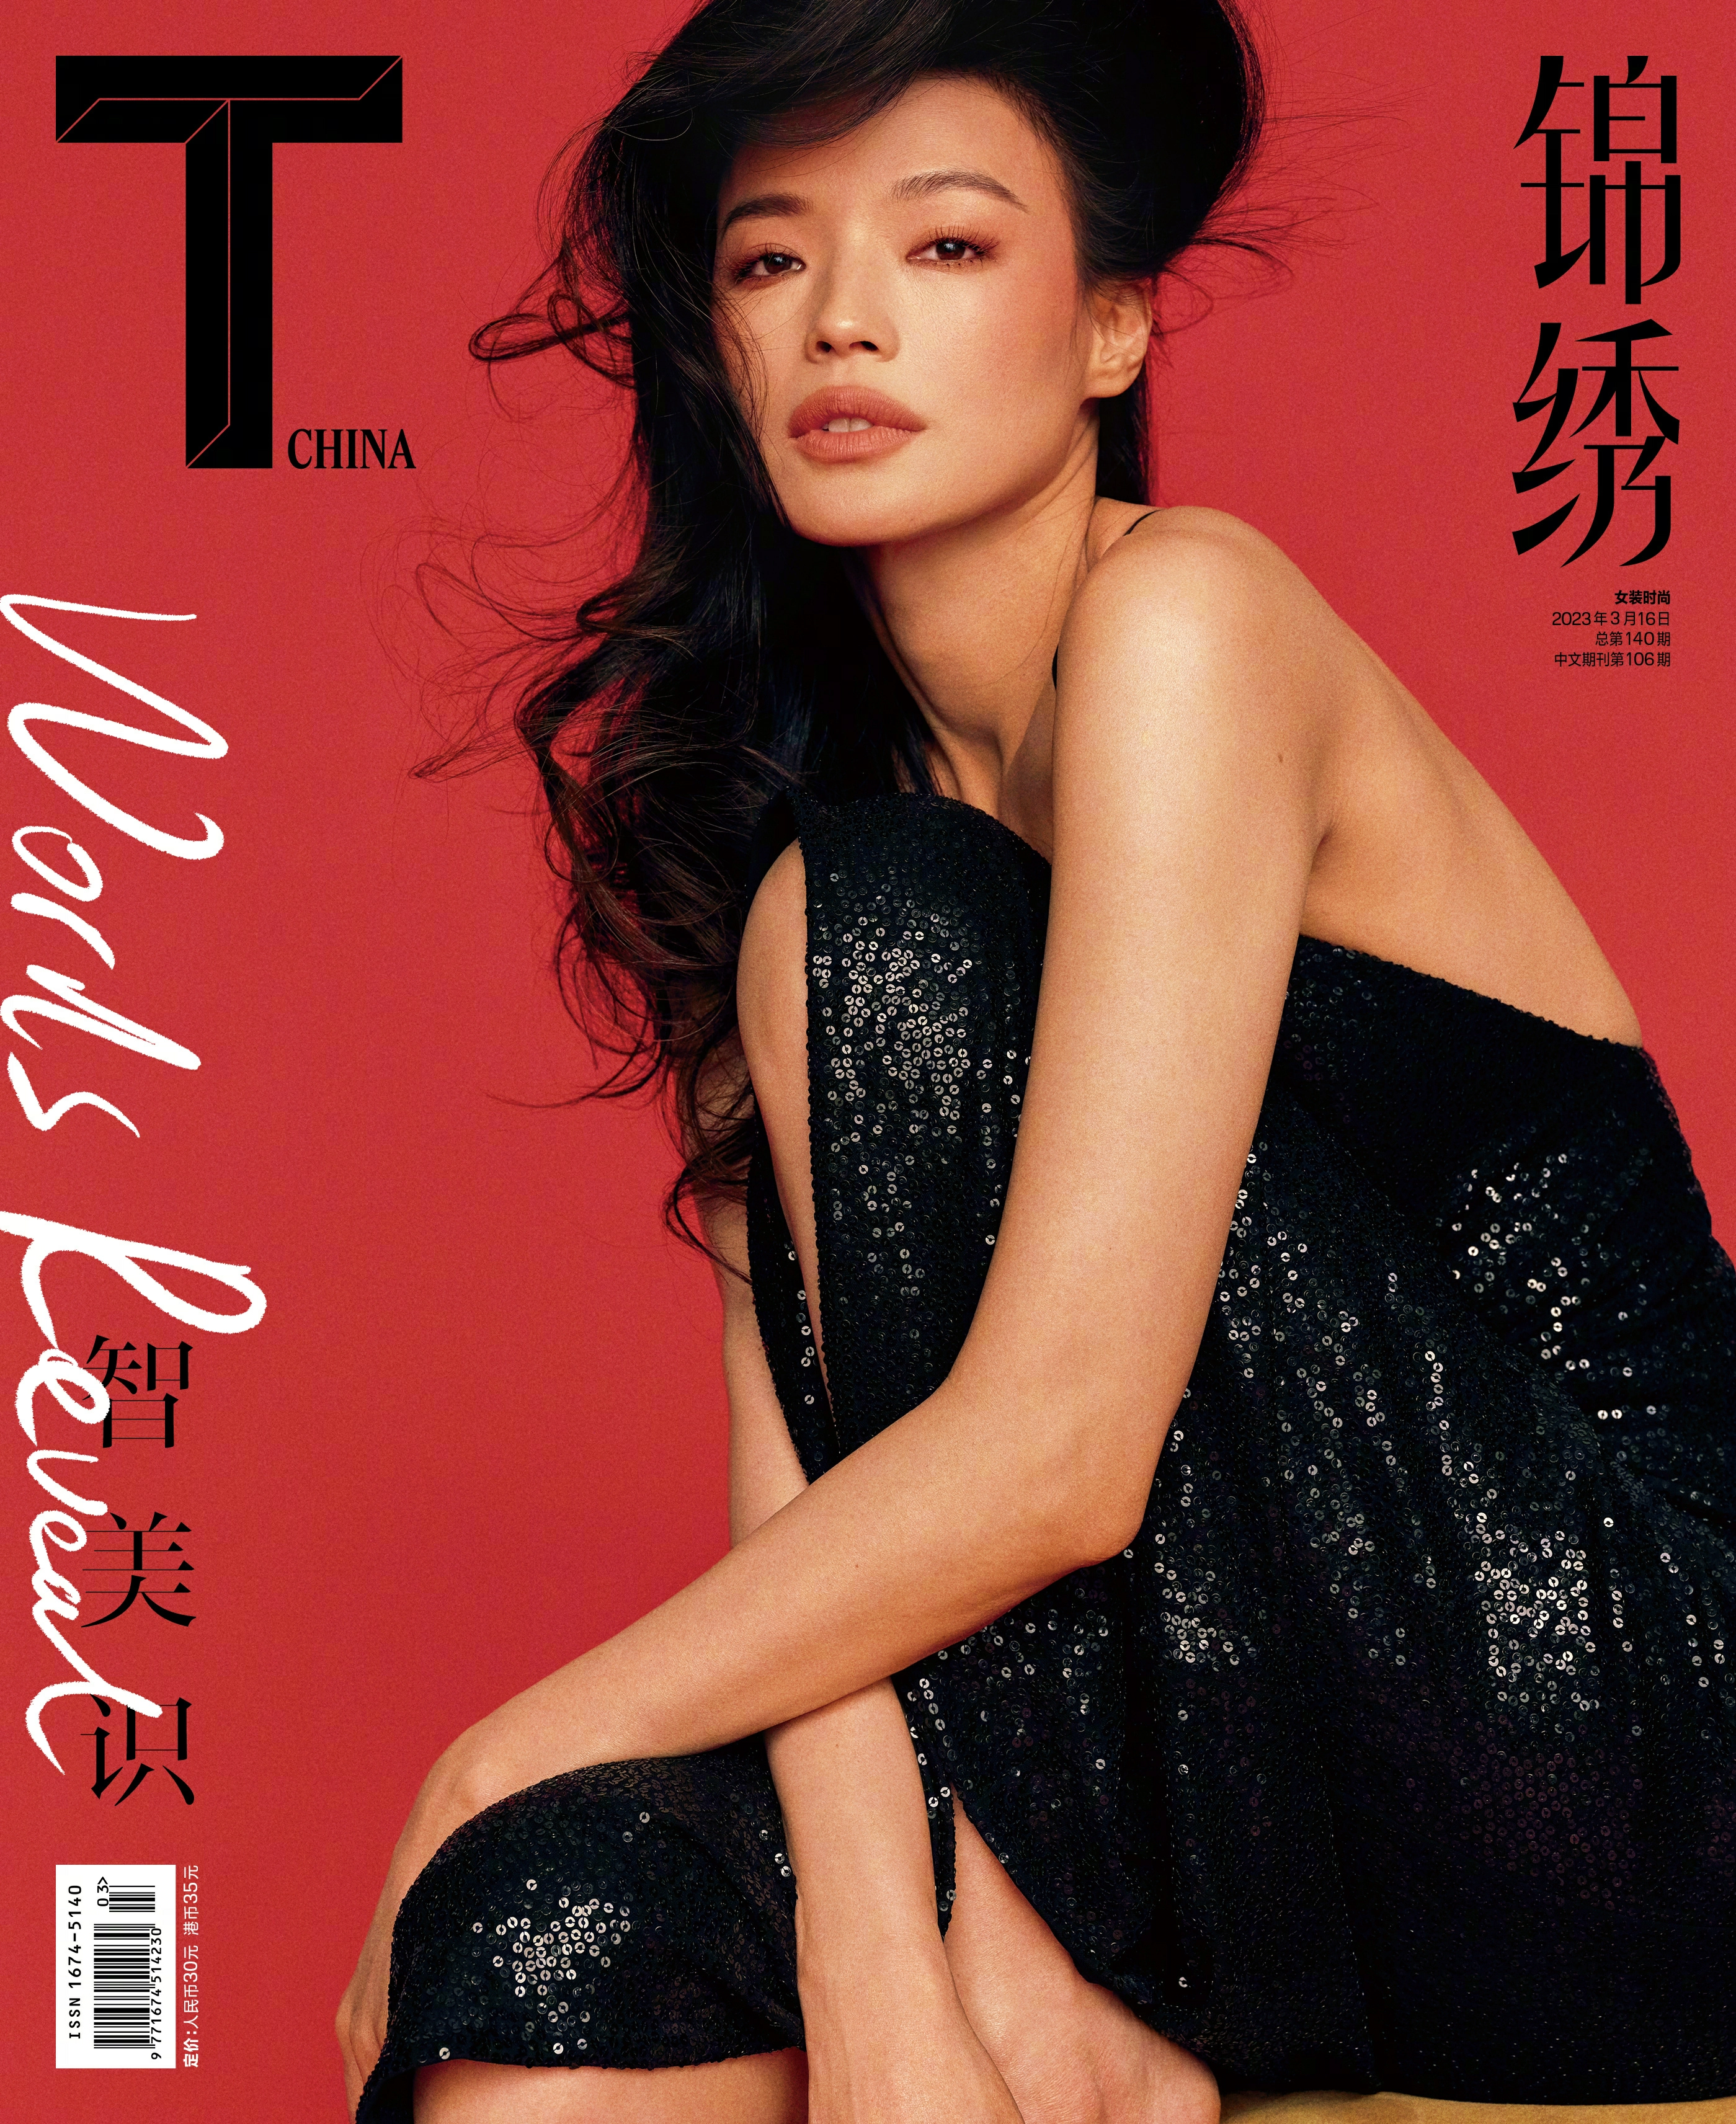 舒淇登上《T Magazine China 锦绣》3月刊封面大片 越松弛的女人越美丽,1 (012)